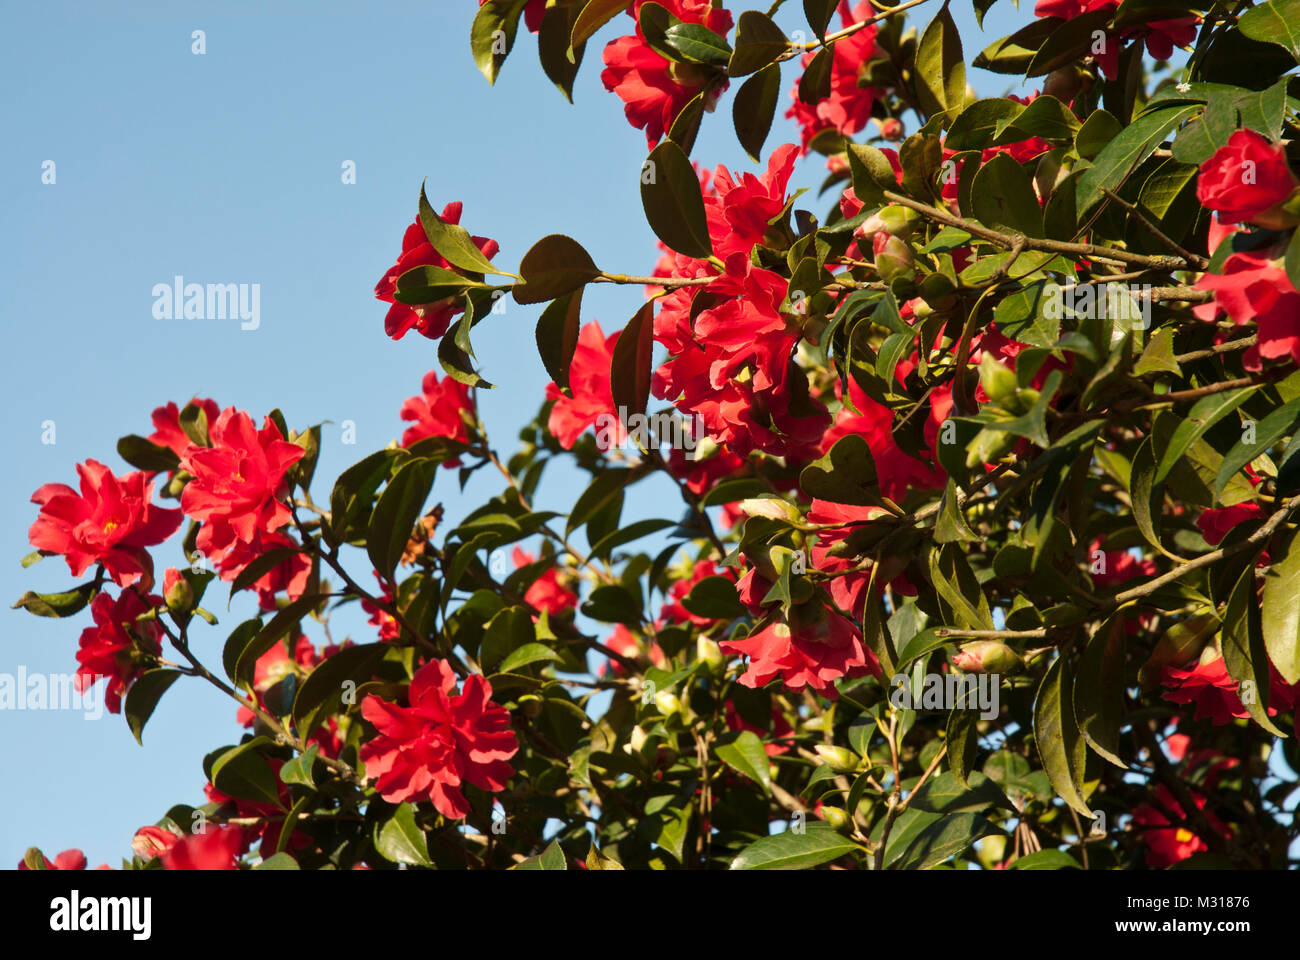 La camelia 'libertad Bell' con el rojo brillante semi-doble profusa flores, solas o clusters. Flores durante todo el invierno y la primavera. Sunny, contra el cielo azul. Foto de stock